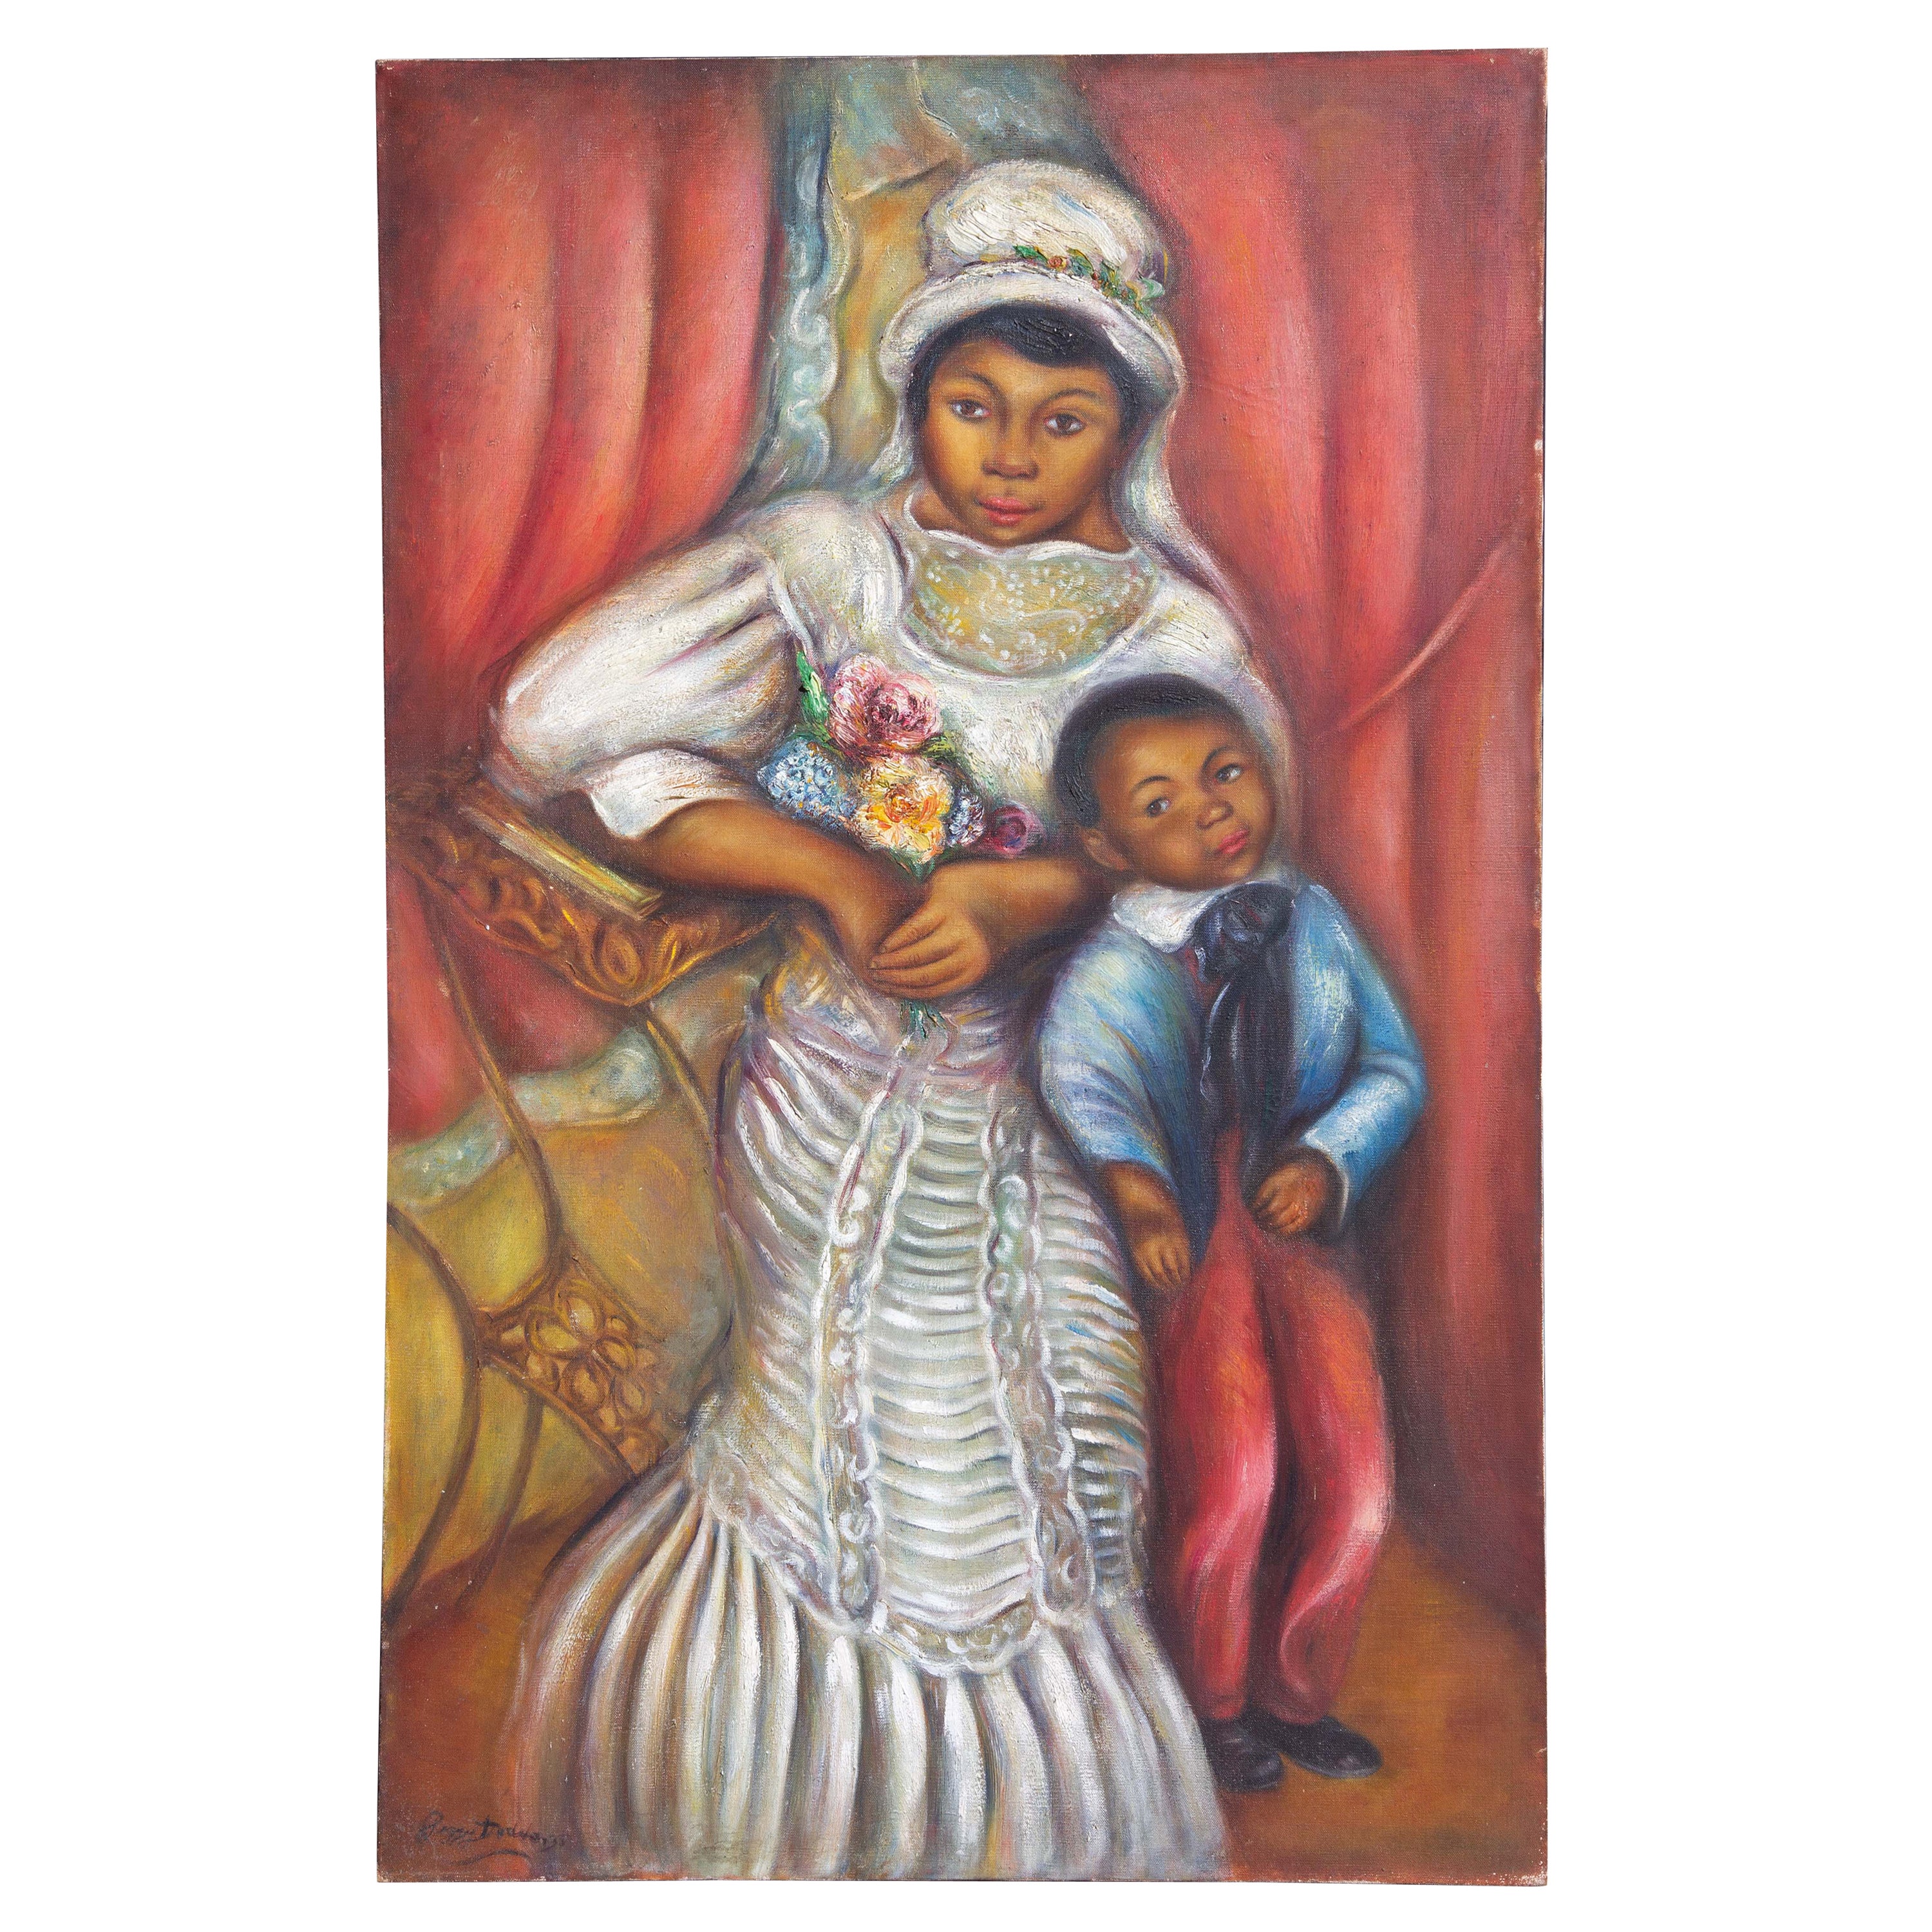 Mère et enfant africaine d'Amérique par Peggy Dodds vers les années 1940